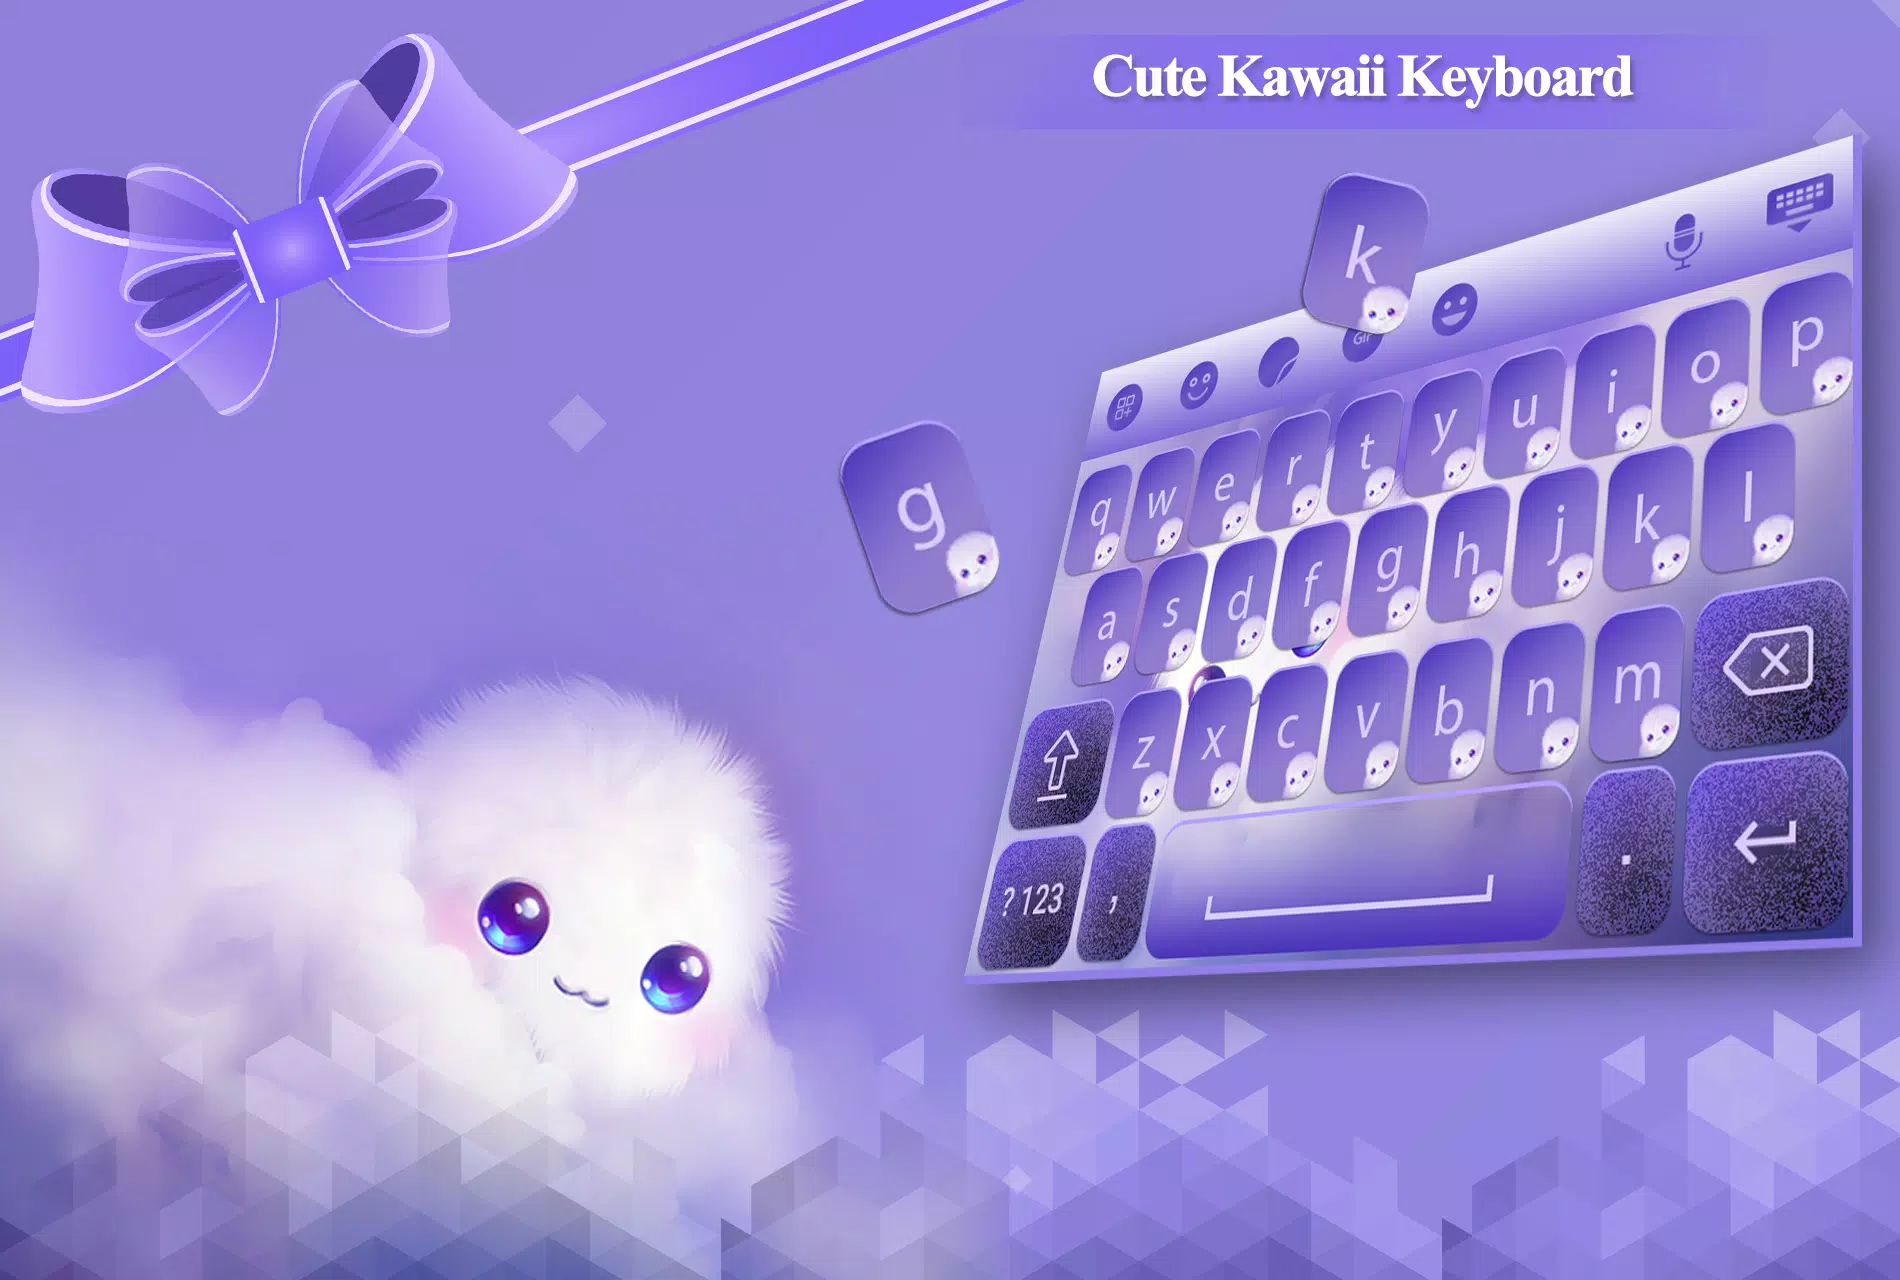 Cute Kawaii Keyboard APK: Cập nhật trải nghiệm mới lạ và đáng yêu cho bàn phím điện thoại với Cute Kawaii Keyboard APK. Sở hữu bàn phím với những biểu tượng và hình vẽ nét đẹp cùng với những âm thanh độc đáo, khiến bạn phát cuồng với sự dễ thương của chúng. Hãy tải ngay Cute Kawaii Keyboard APK để trải nghiệm nhé!